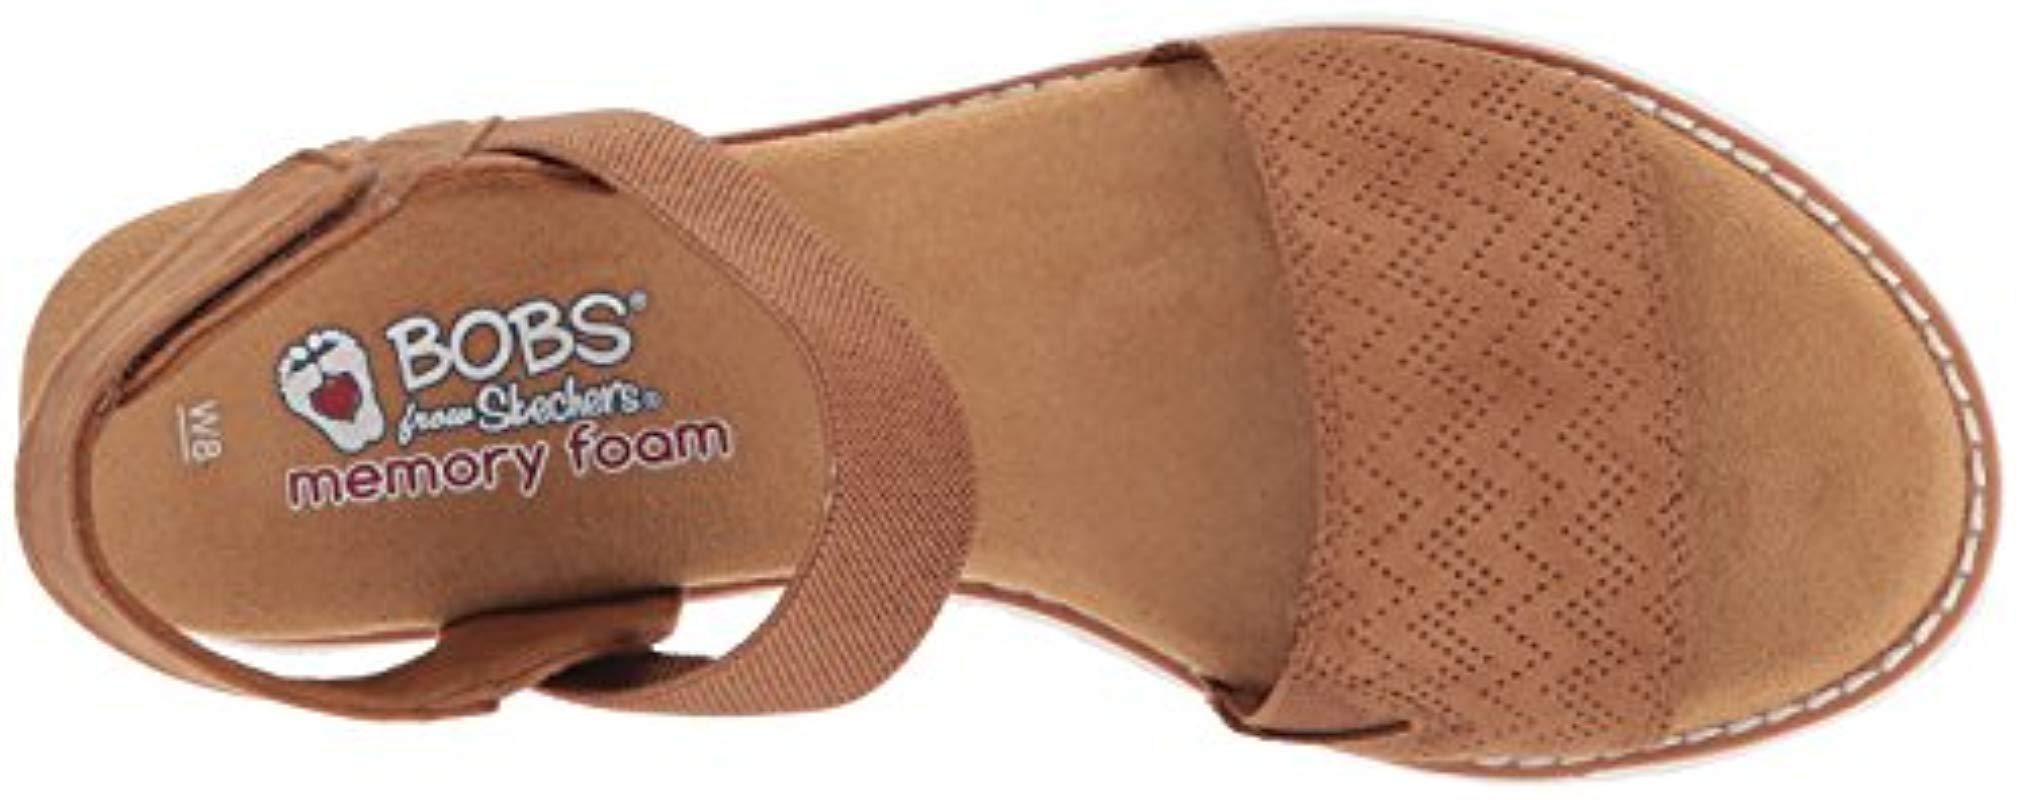 Skechers Bobs Desert Kiss Flat Sandal in Chestnut (Brown) | Lyst